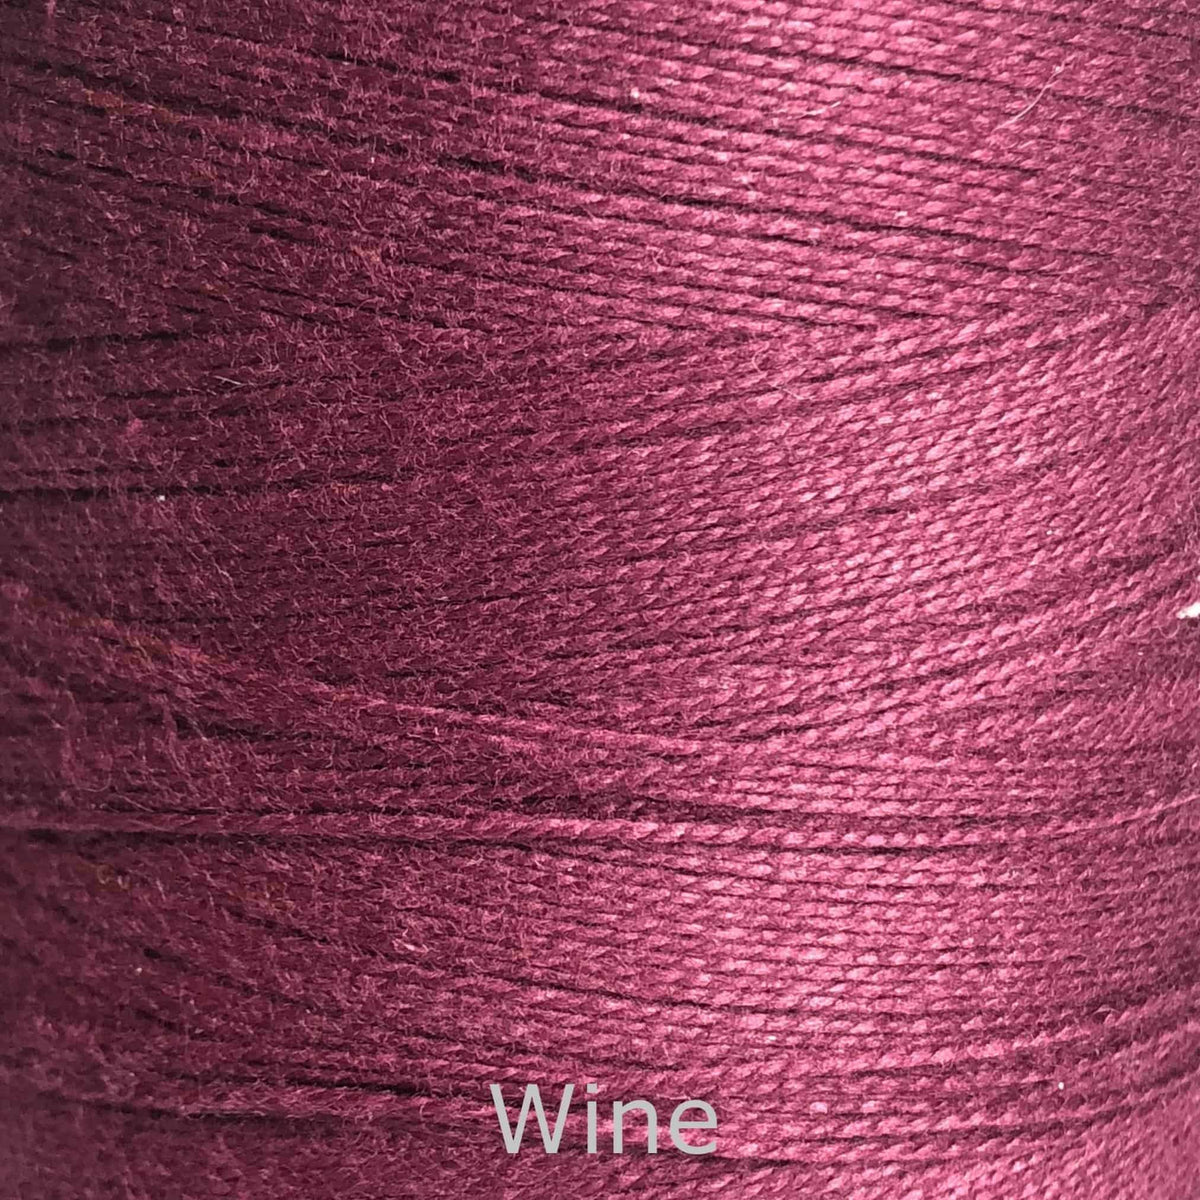 16/2 cotton weaving yarn wine